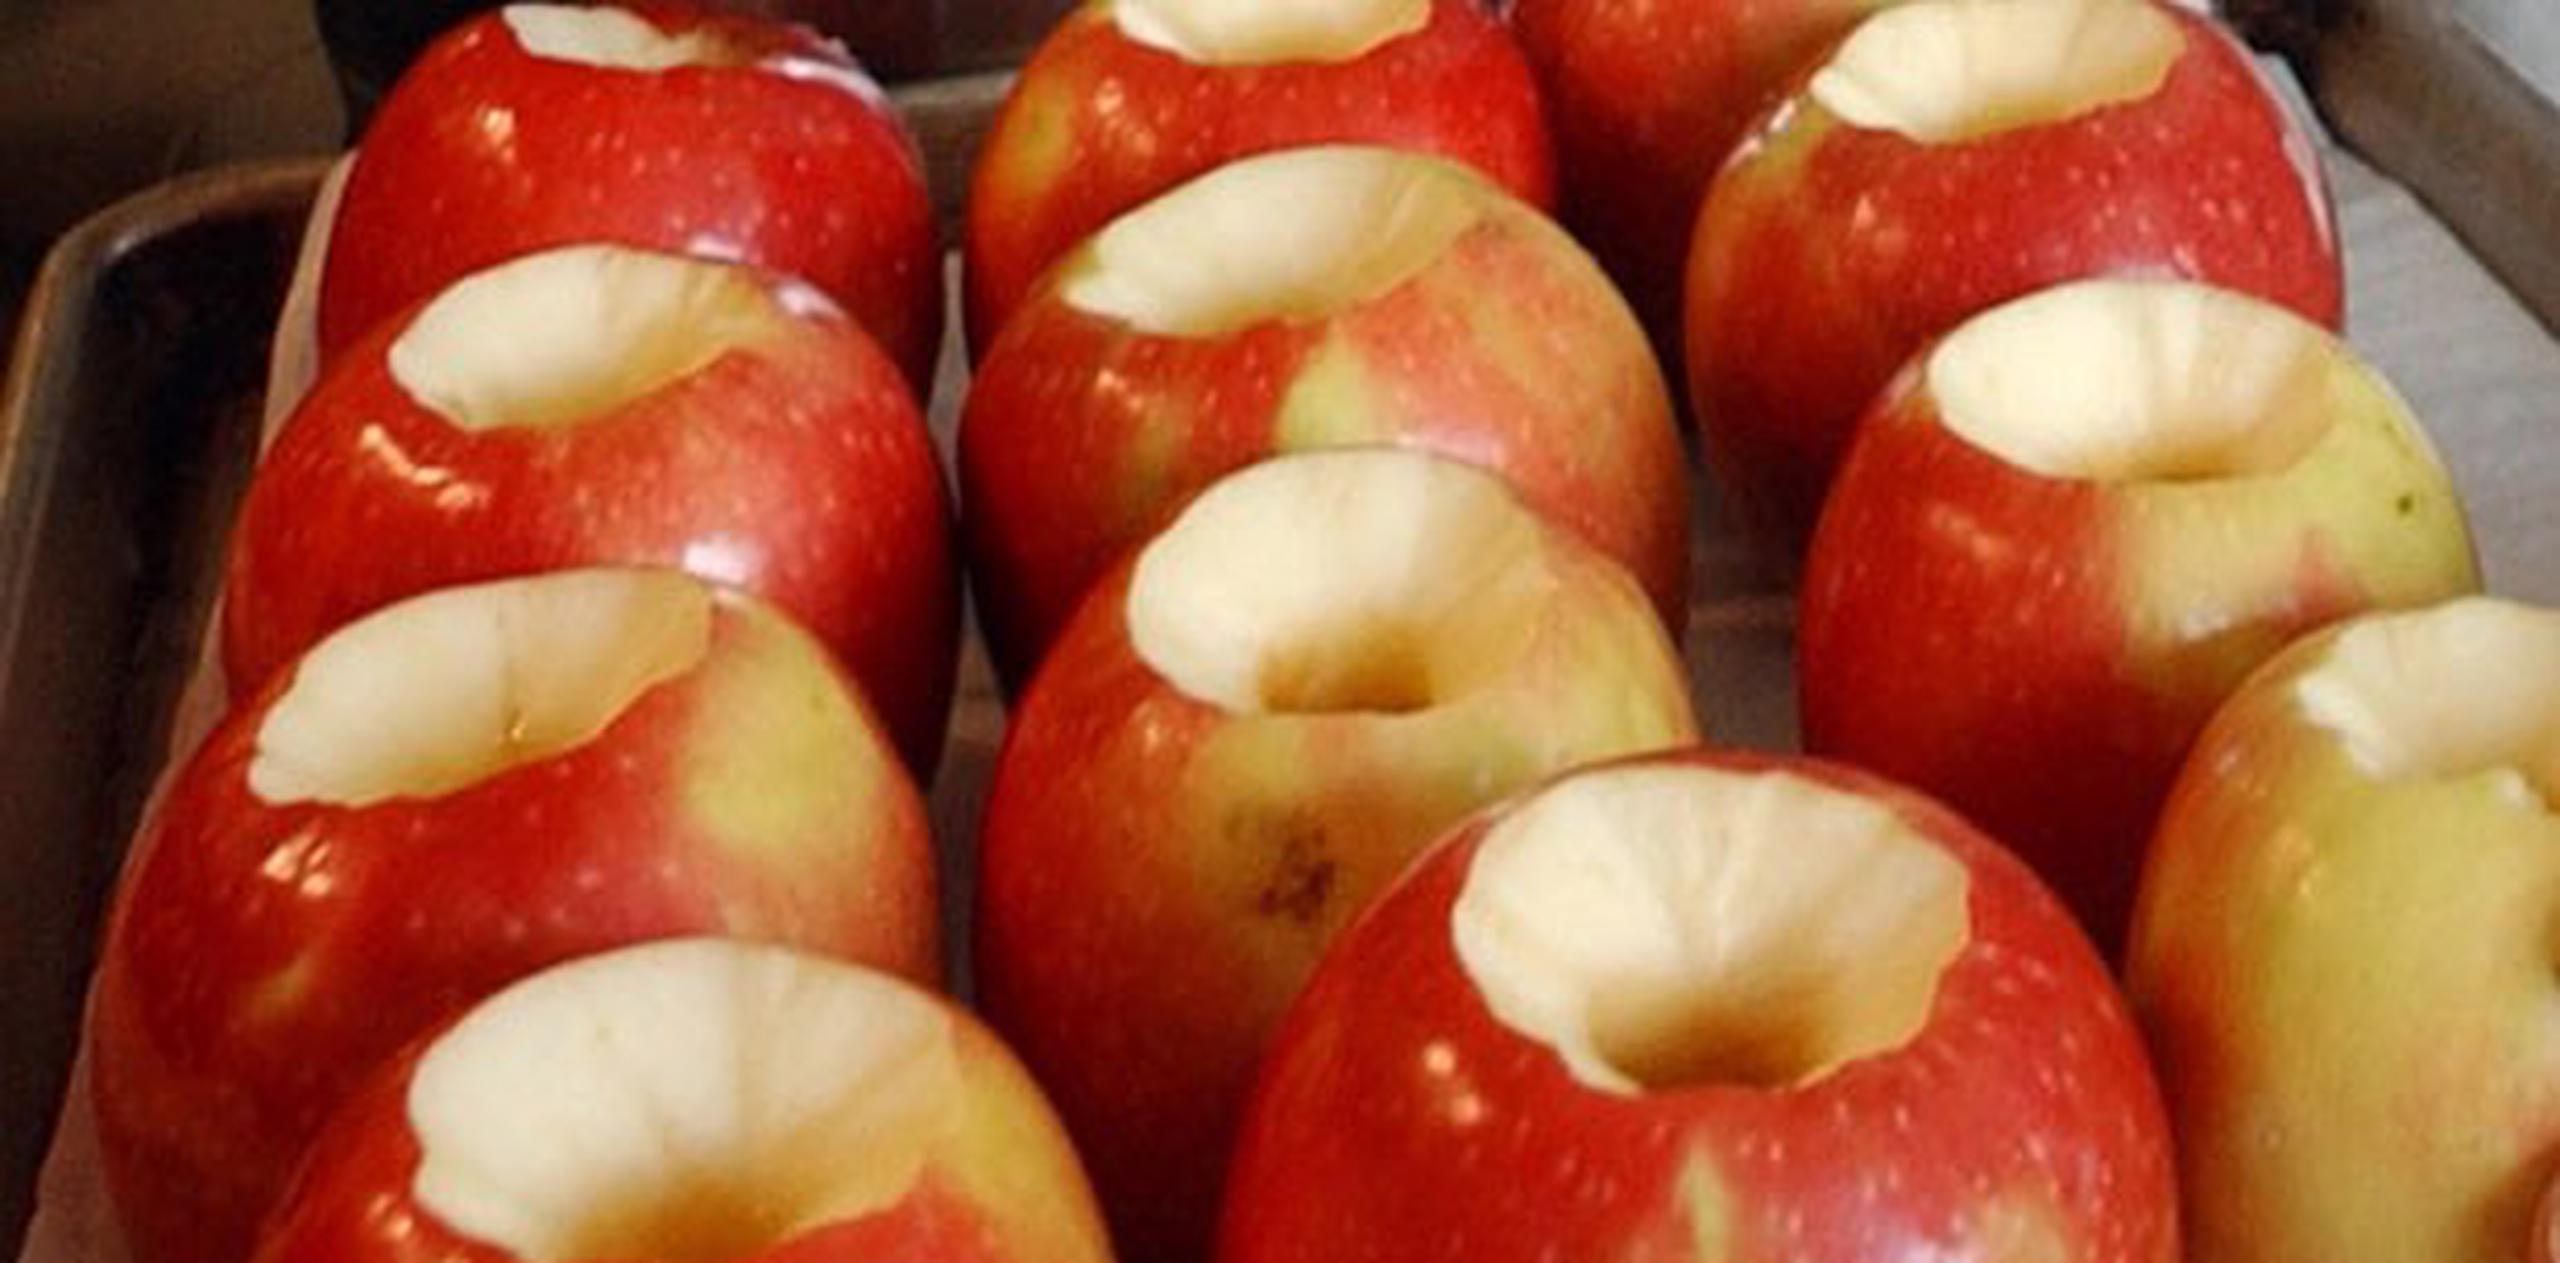 La epidemia y los fallecimientos han sido vinculados al consumo de manzanas acarameladas. (Archivo)